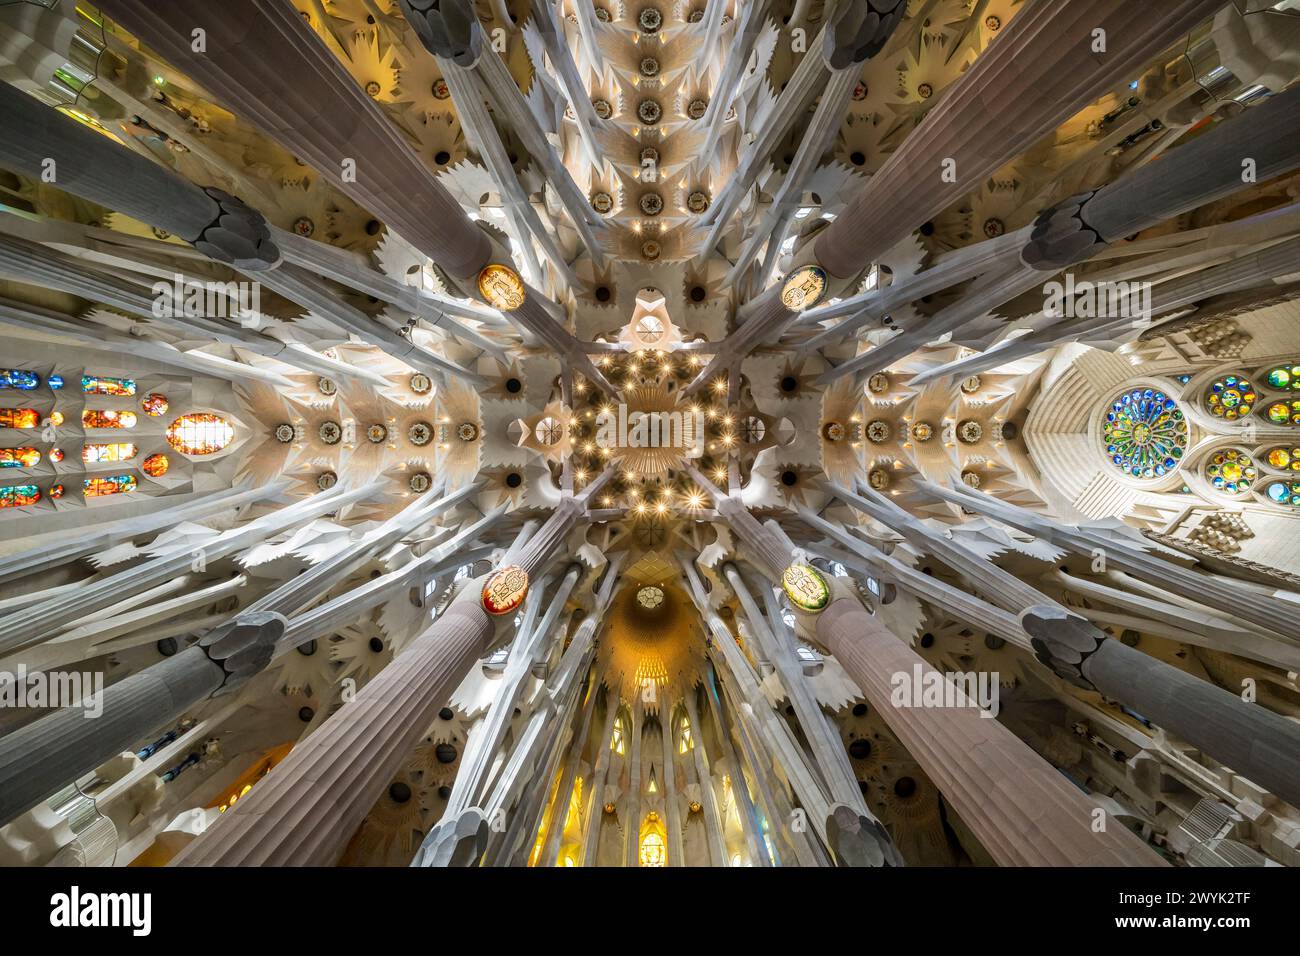 Spanien, Katalonien, Barcelona, Viertel Eixample, Basilika Sagrada Familia des katalanischen modernistischen Architekten Antoni Gaudi, gelistet zum UNESCO-Weltkulturerbe, Panoramablick auf den Querkreuz, der das himmlische Jerusalem symbolisiert, die Apsis befindet sich unten, der Osten rechts, der Westen links Stockfoto